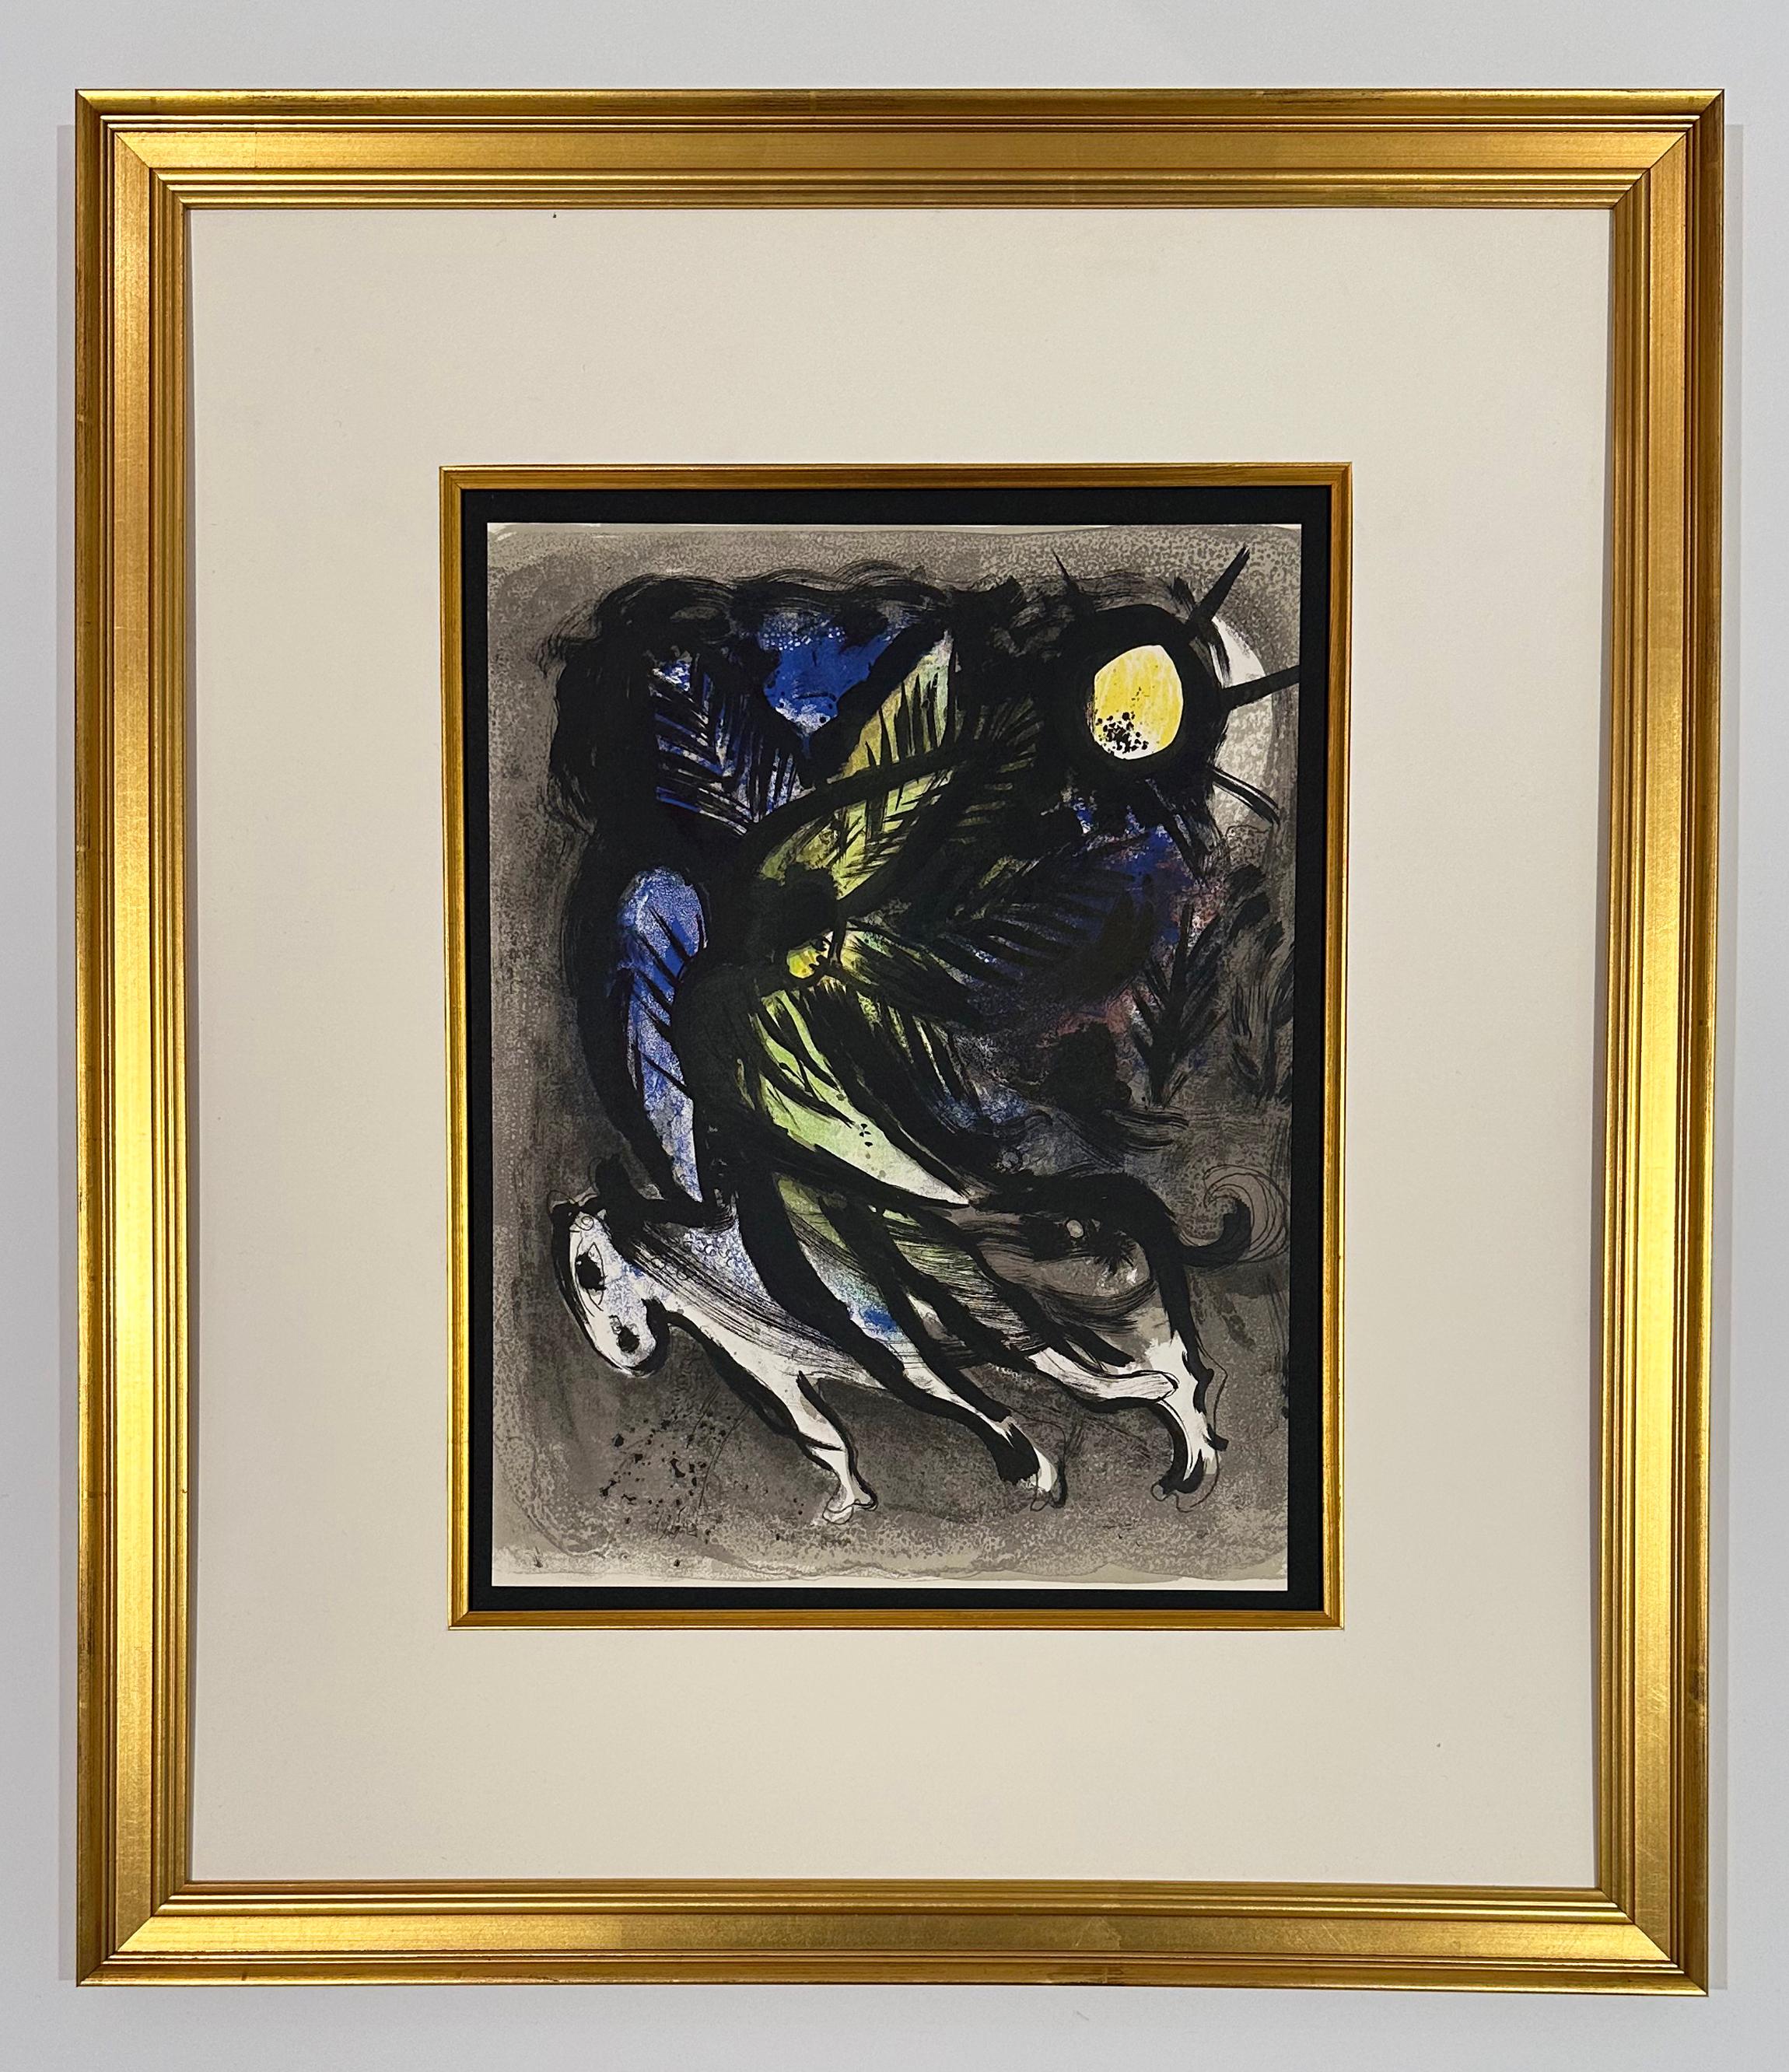 L'ange, de 1960, lithographie de Mourlot I - Print de Marc Chagall